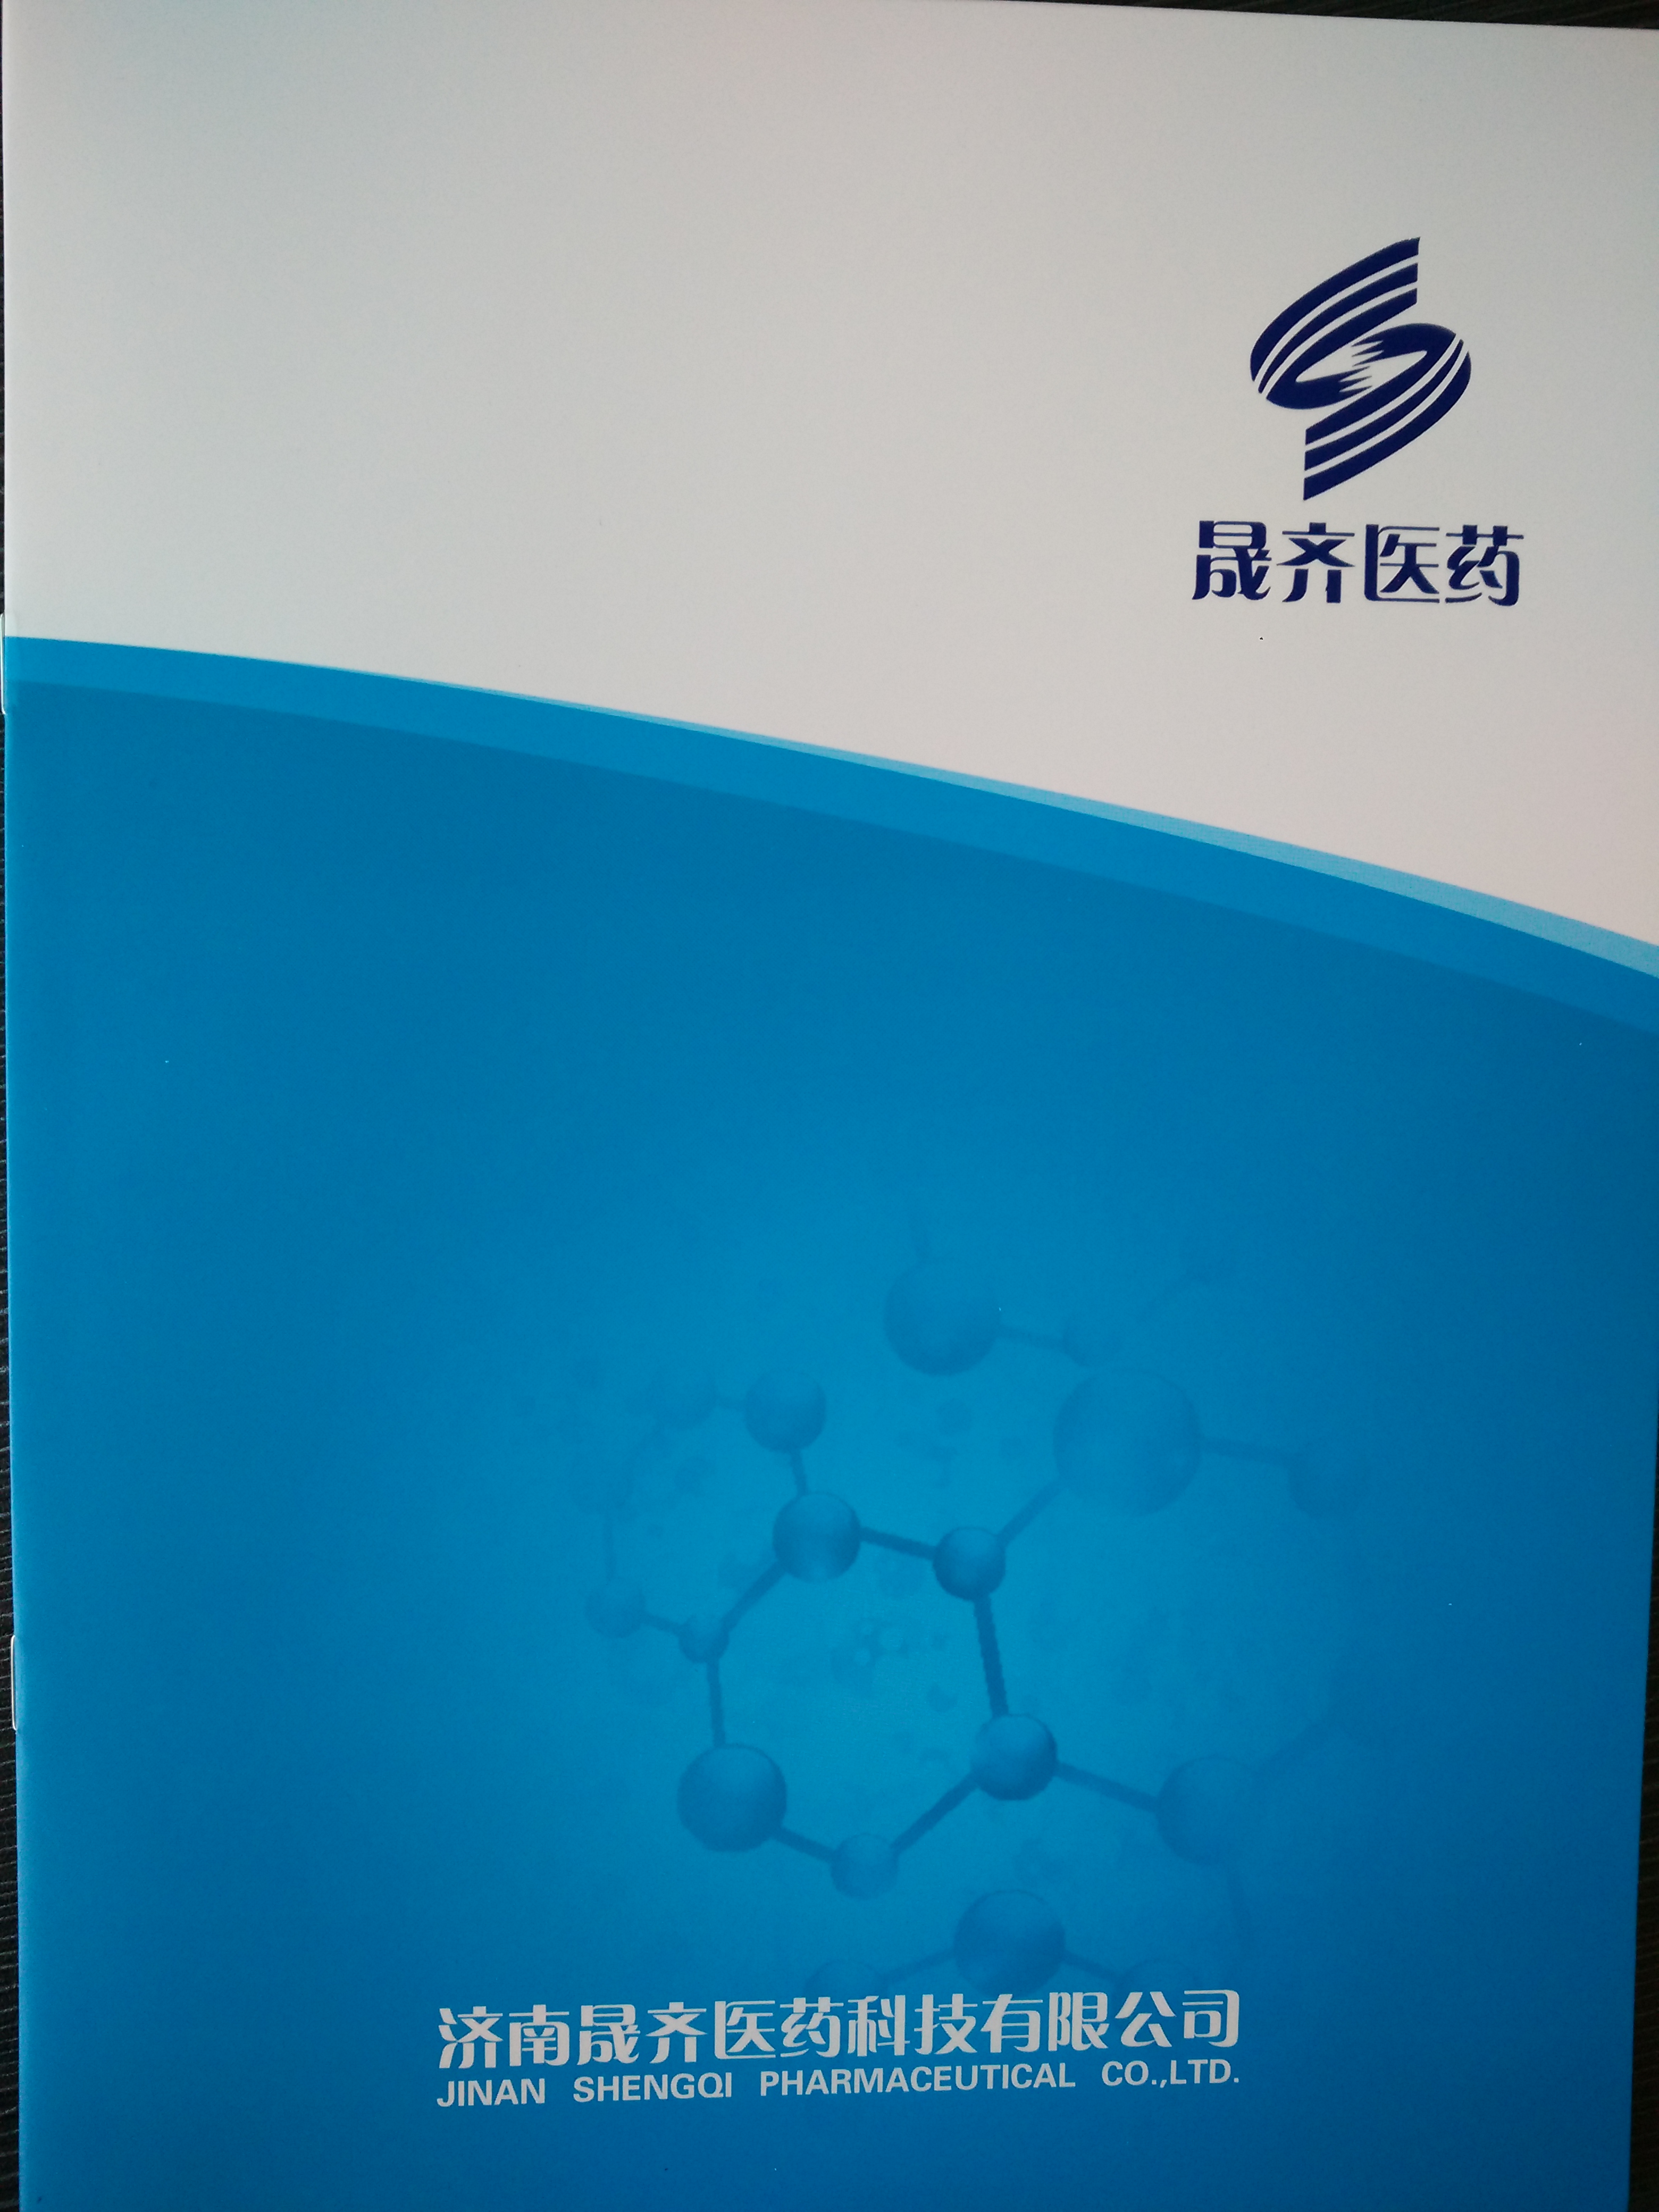 Manufactory_Jinan Shengqi Pharmaceutical Co., Ltd